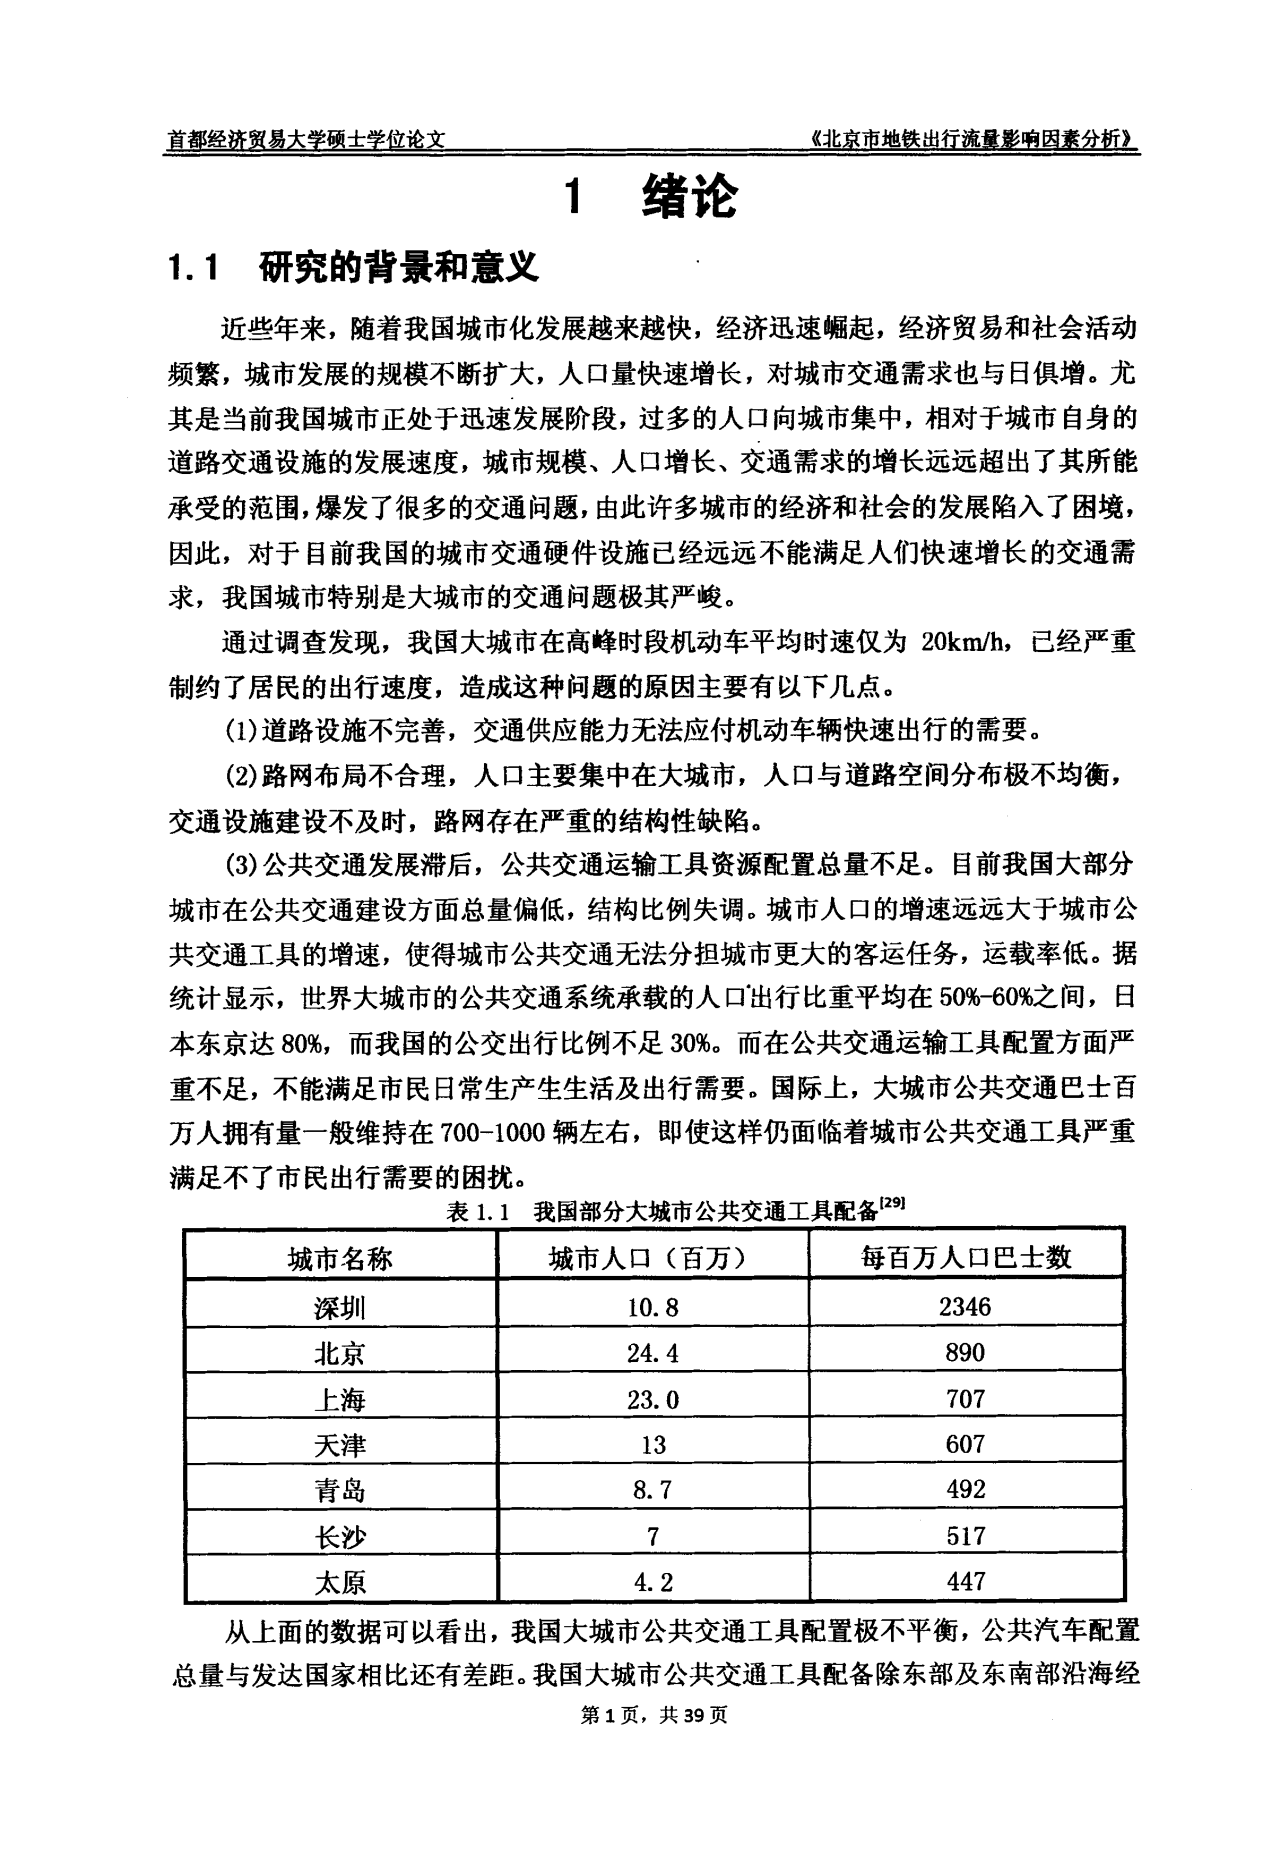 北京市地铁出行流量影响因素分析——以6号线为例